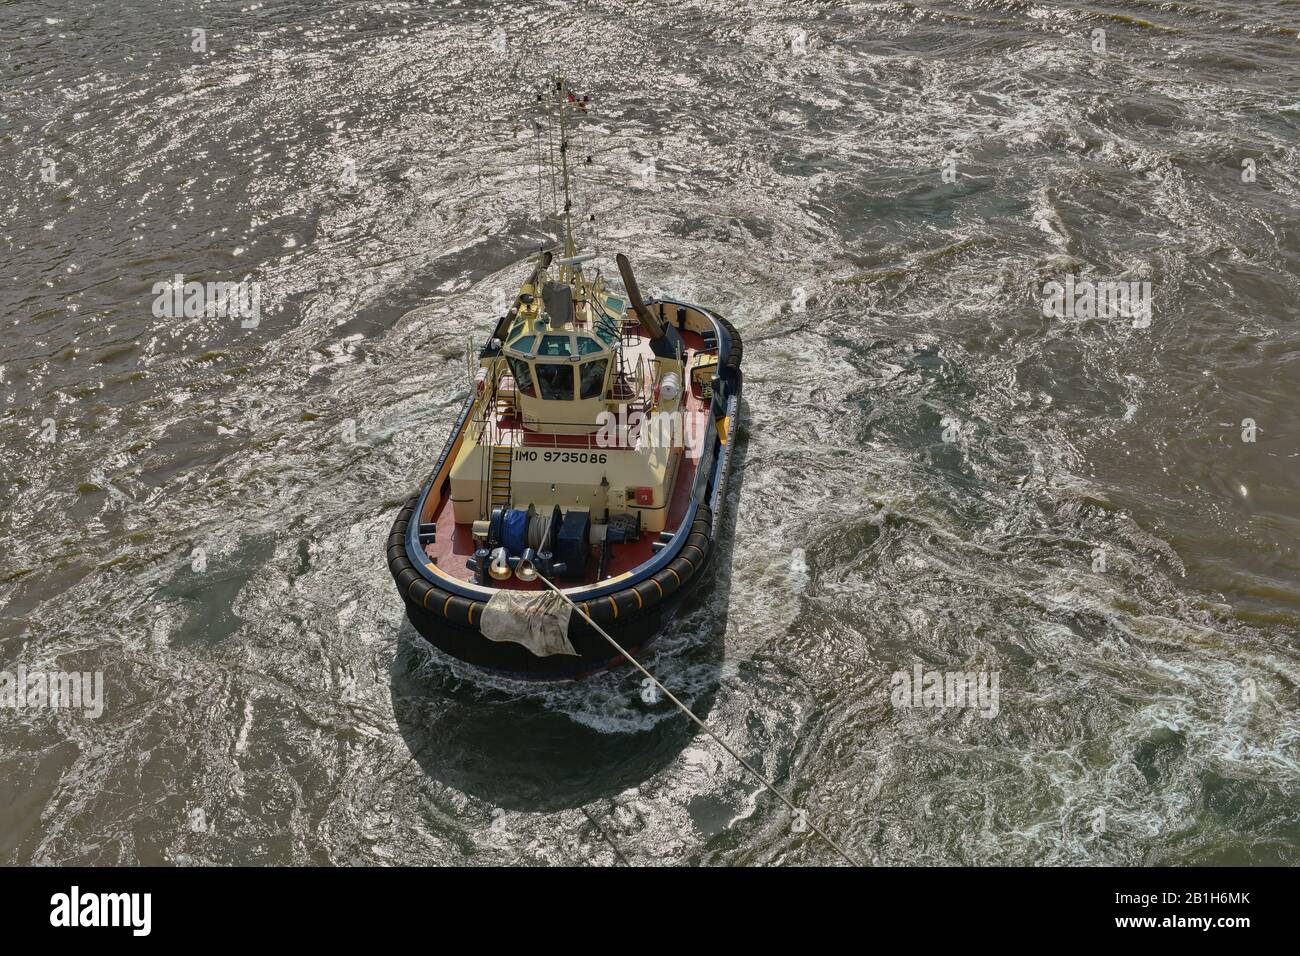 Sydney, NSW, Australia - 10 febbraio 2020: Vista del rimorchiatore dalla nave da crociera. Foto Stock